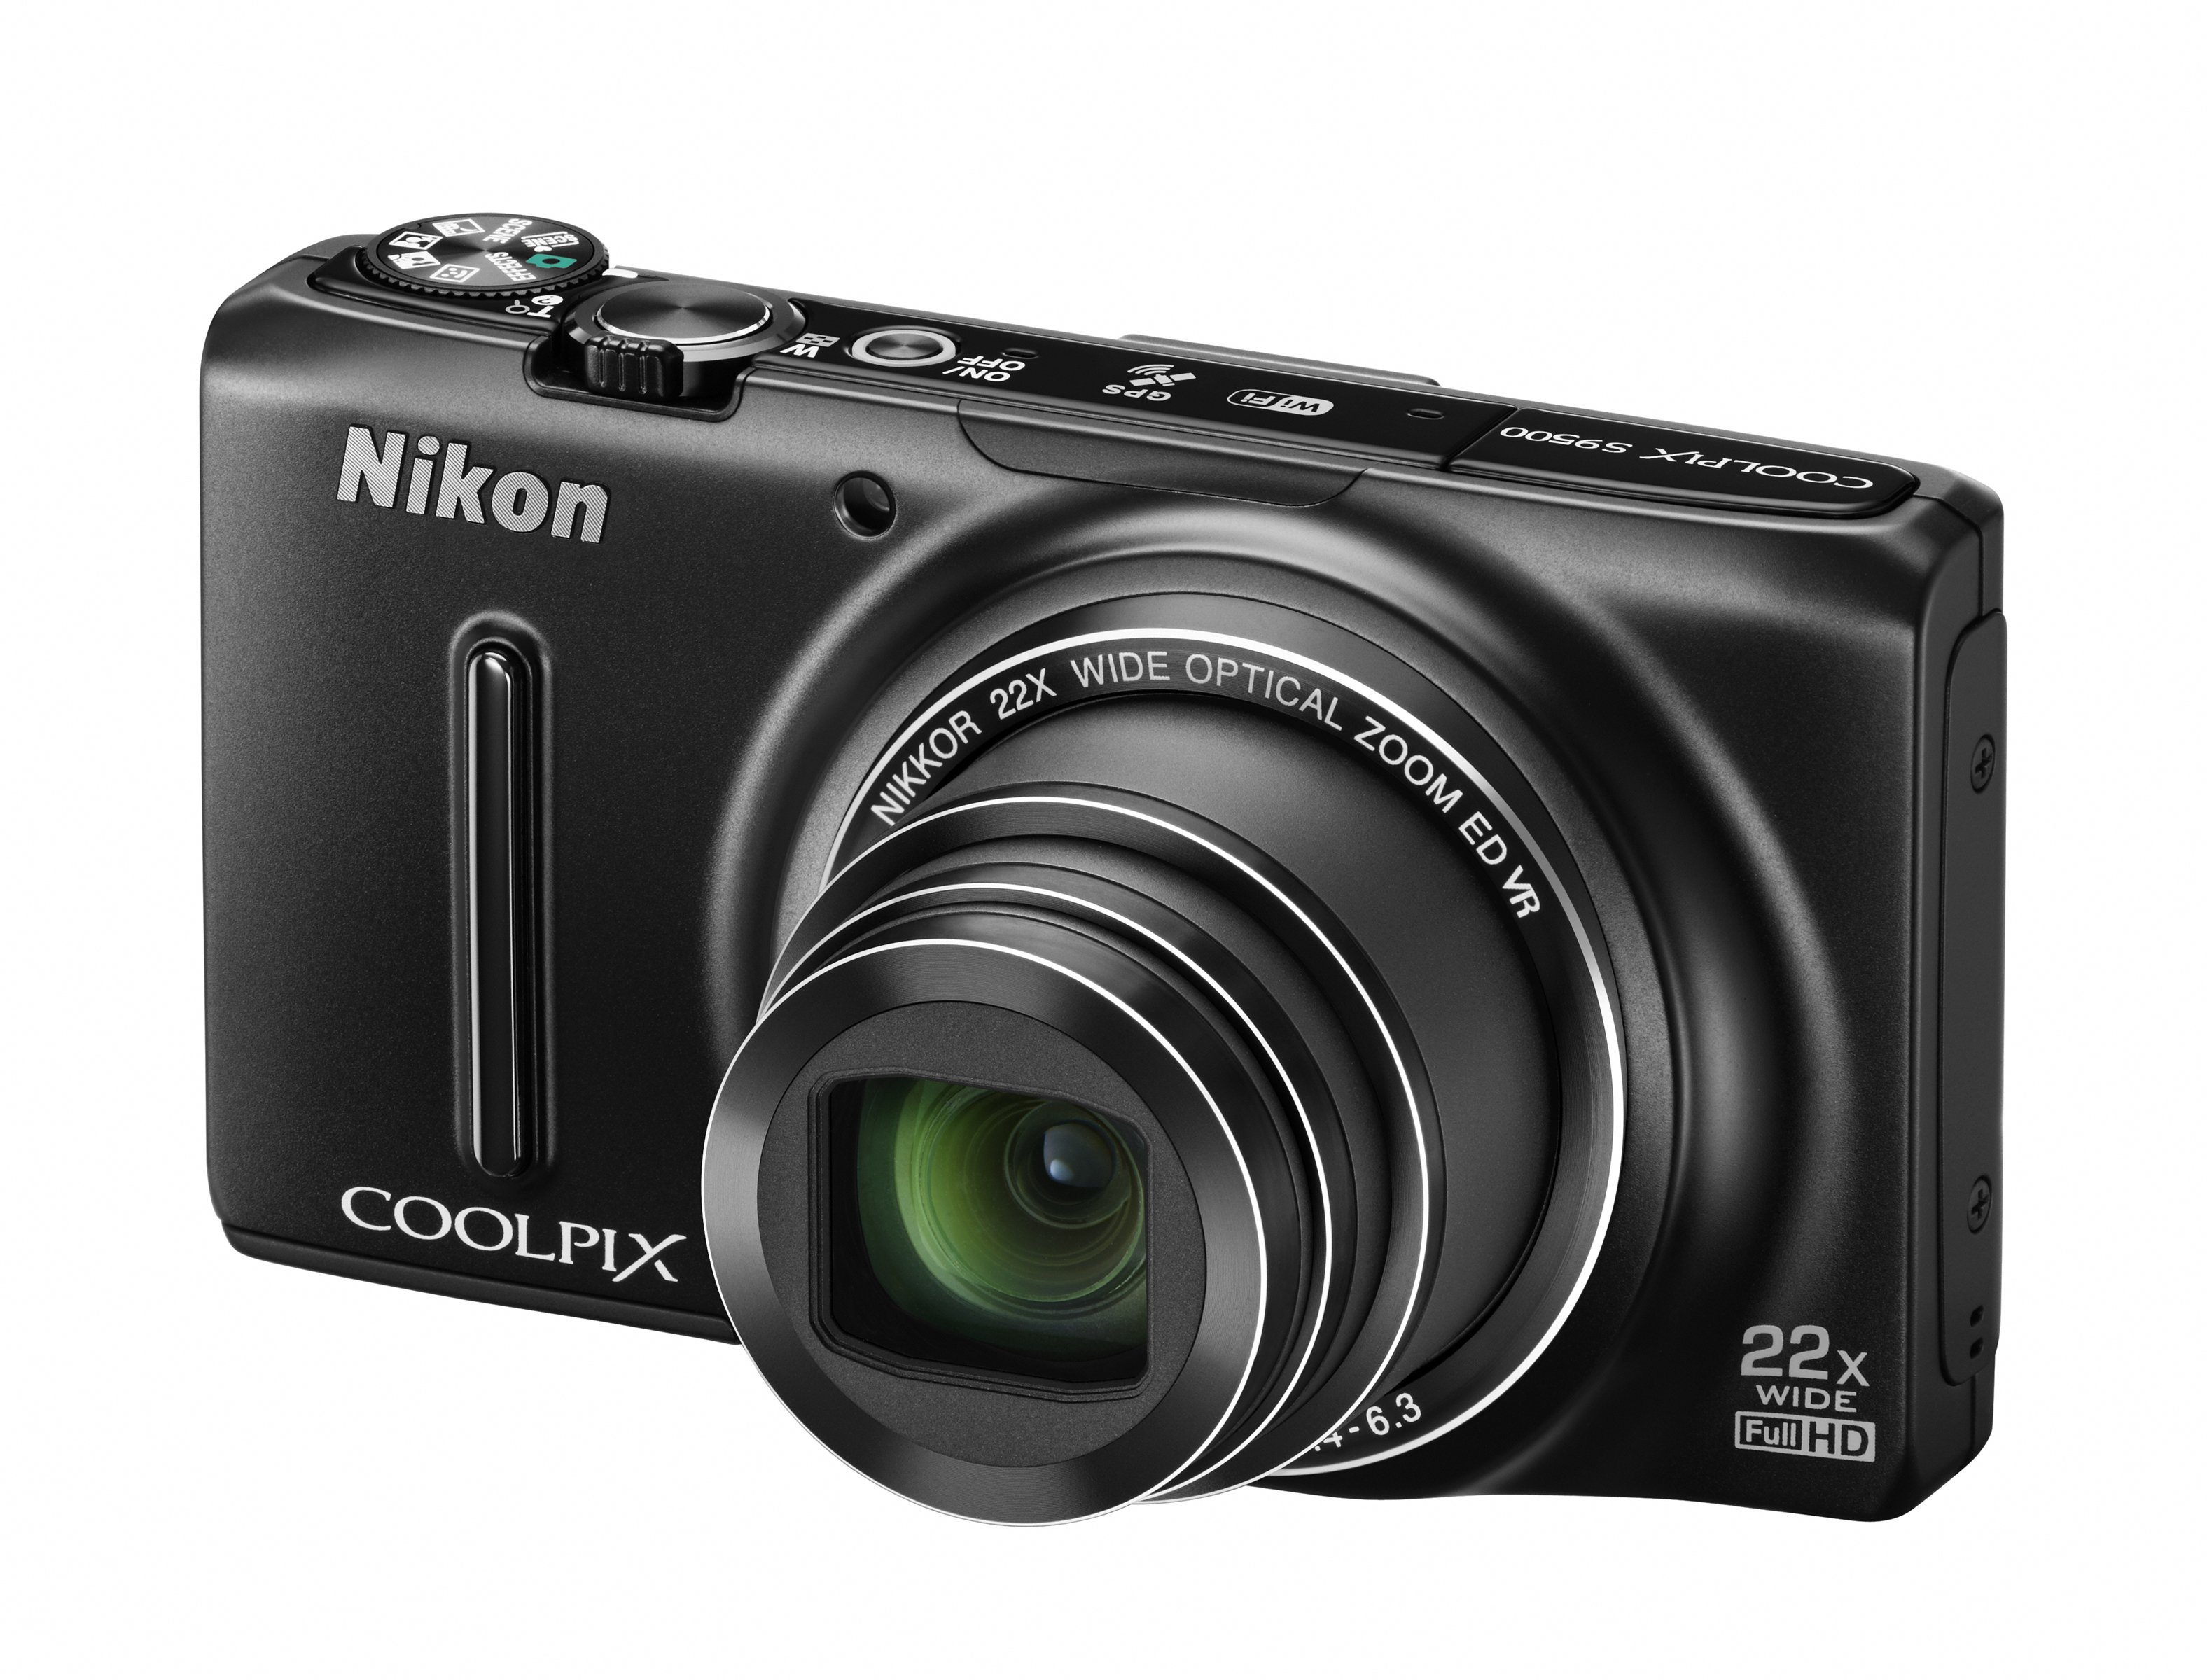 Nikon Coolpix S9500 Digital Camera